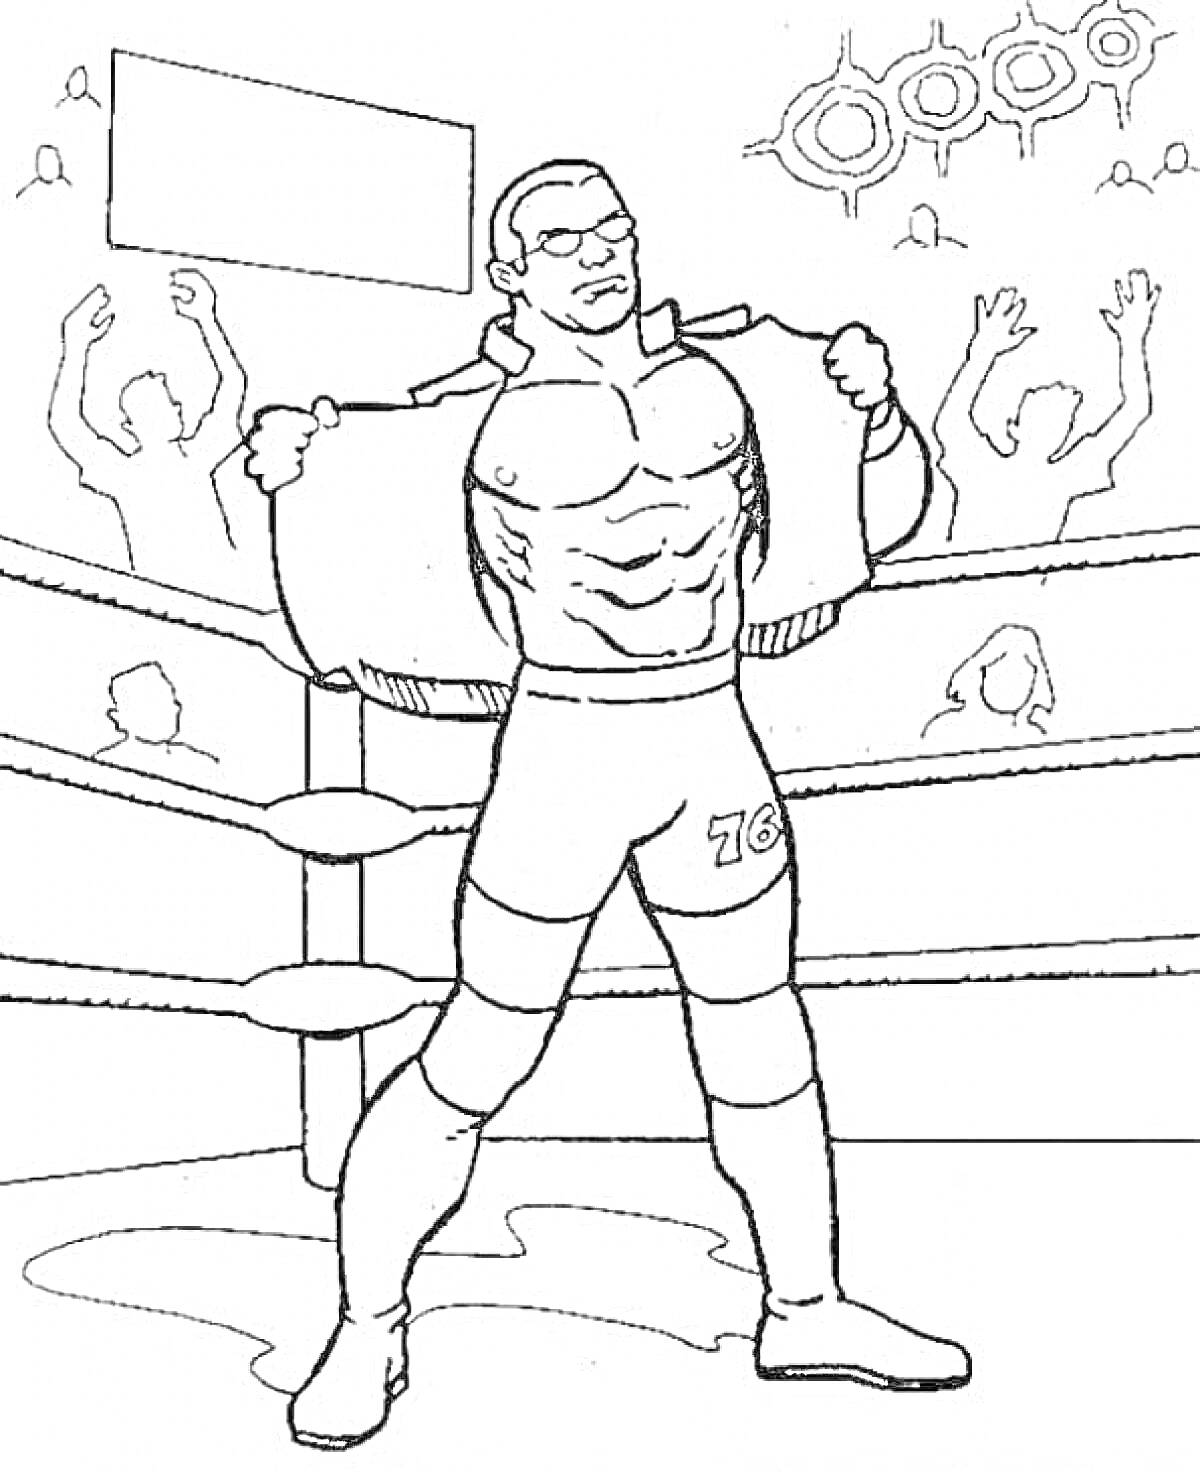 Раскраска Боксер в очках и шортах с номером 76 внутри ринга, раскрывающий пальто, с толпой болельщиков за пределами ринга